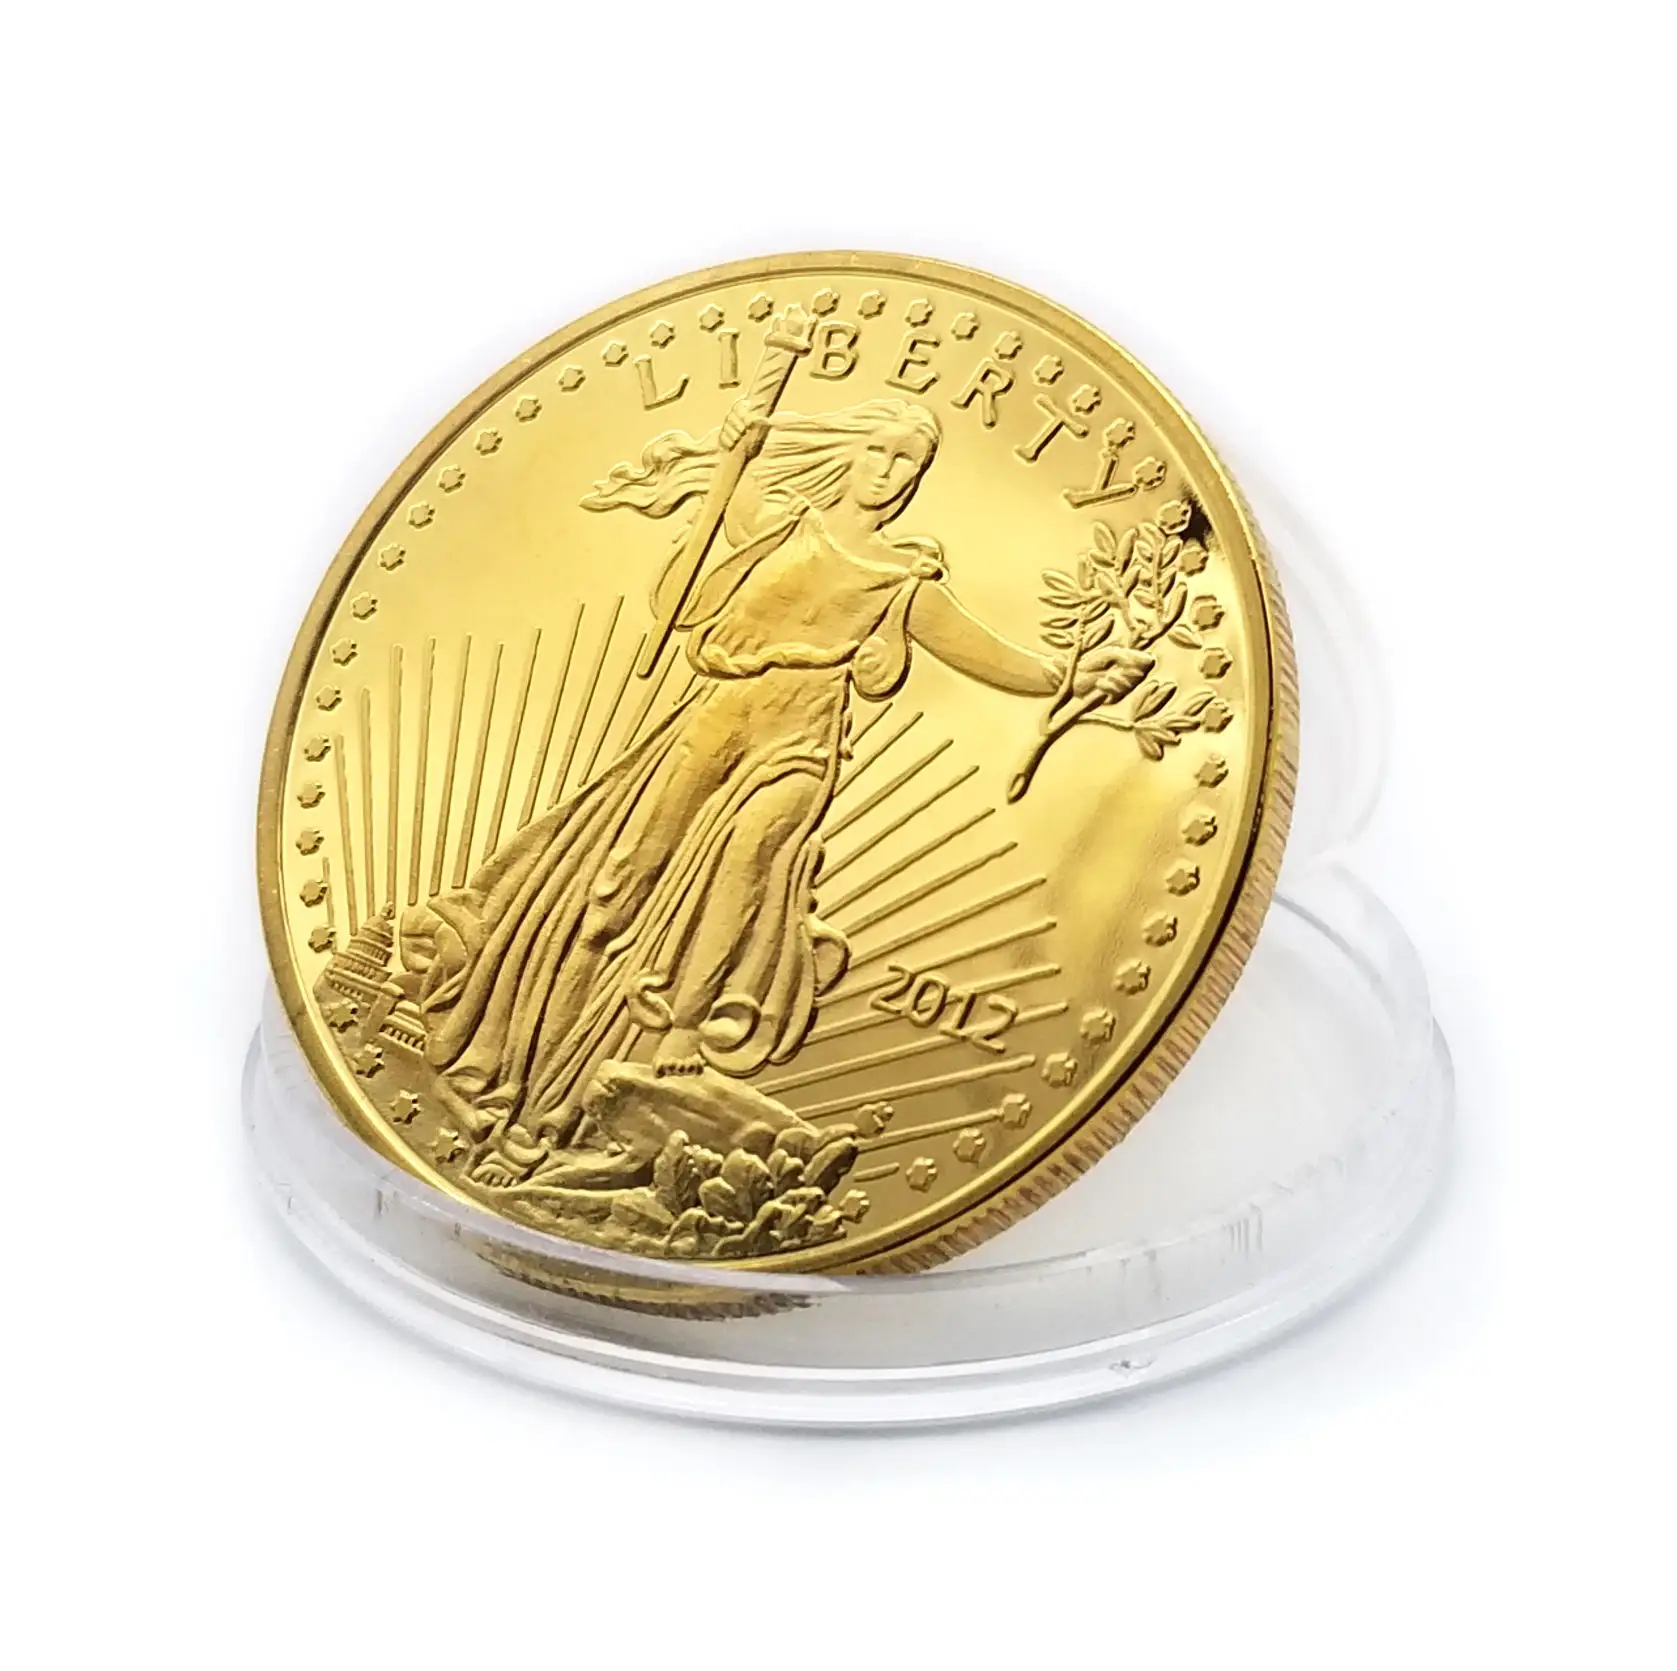 OEM quý EAGLE 1 oz Vàng kỷ niệm bản sao đồng xu Mỹ vonfram vàng bạc đôi Đại Bàng chúng tôi đồng xu